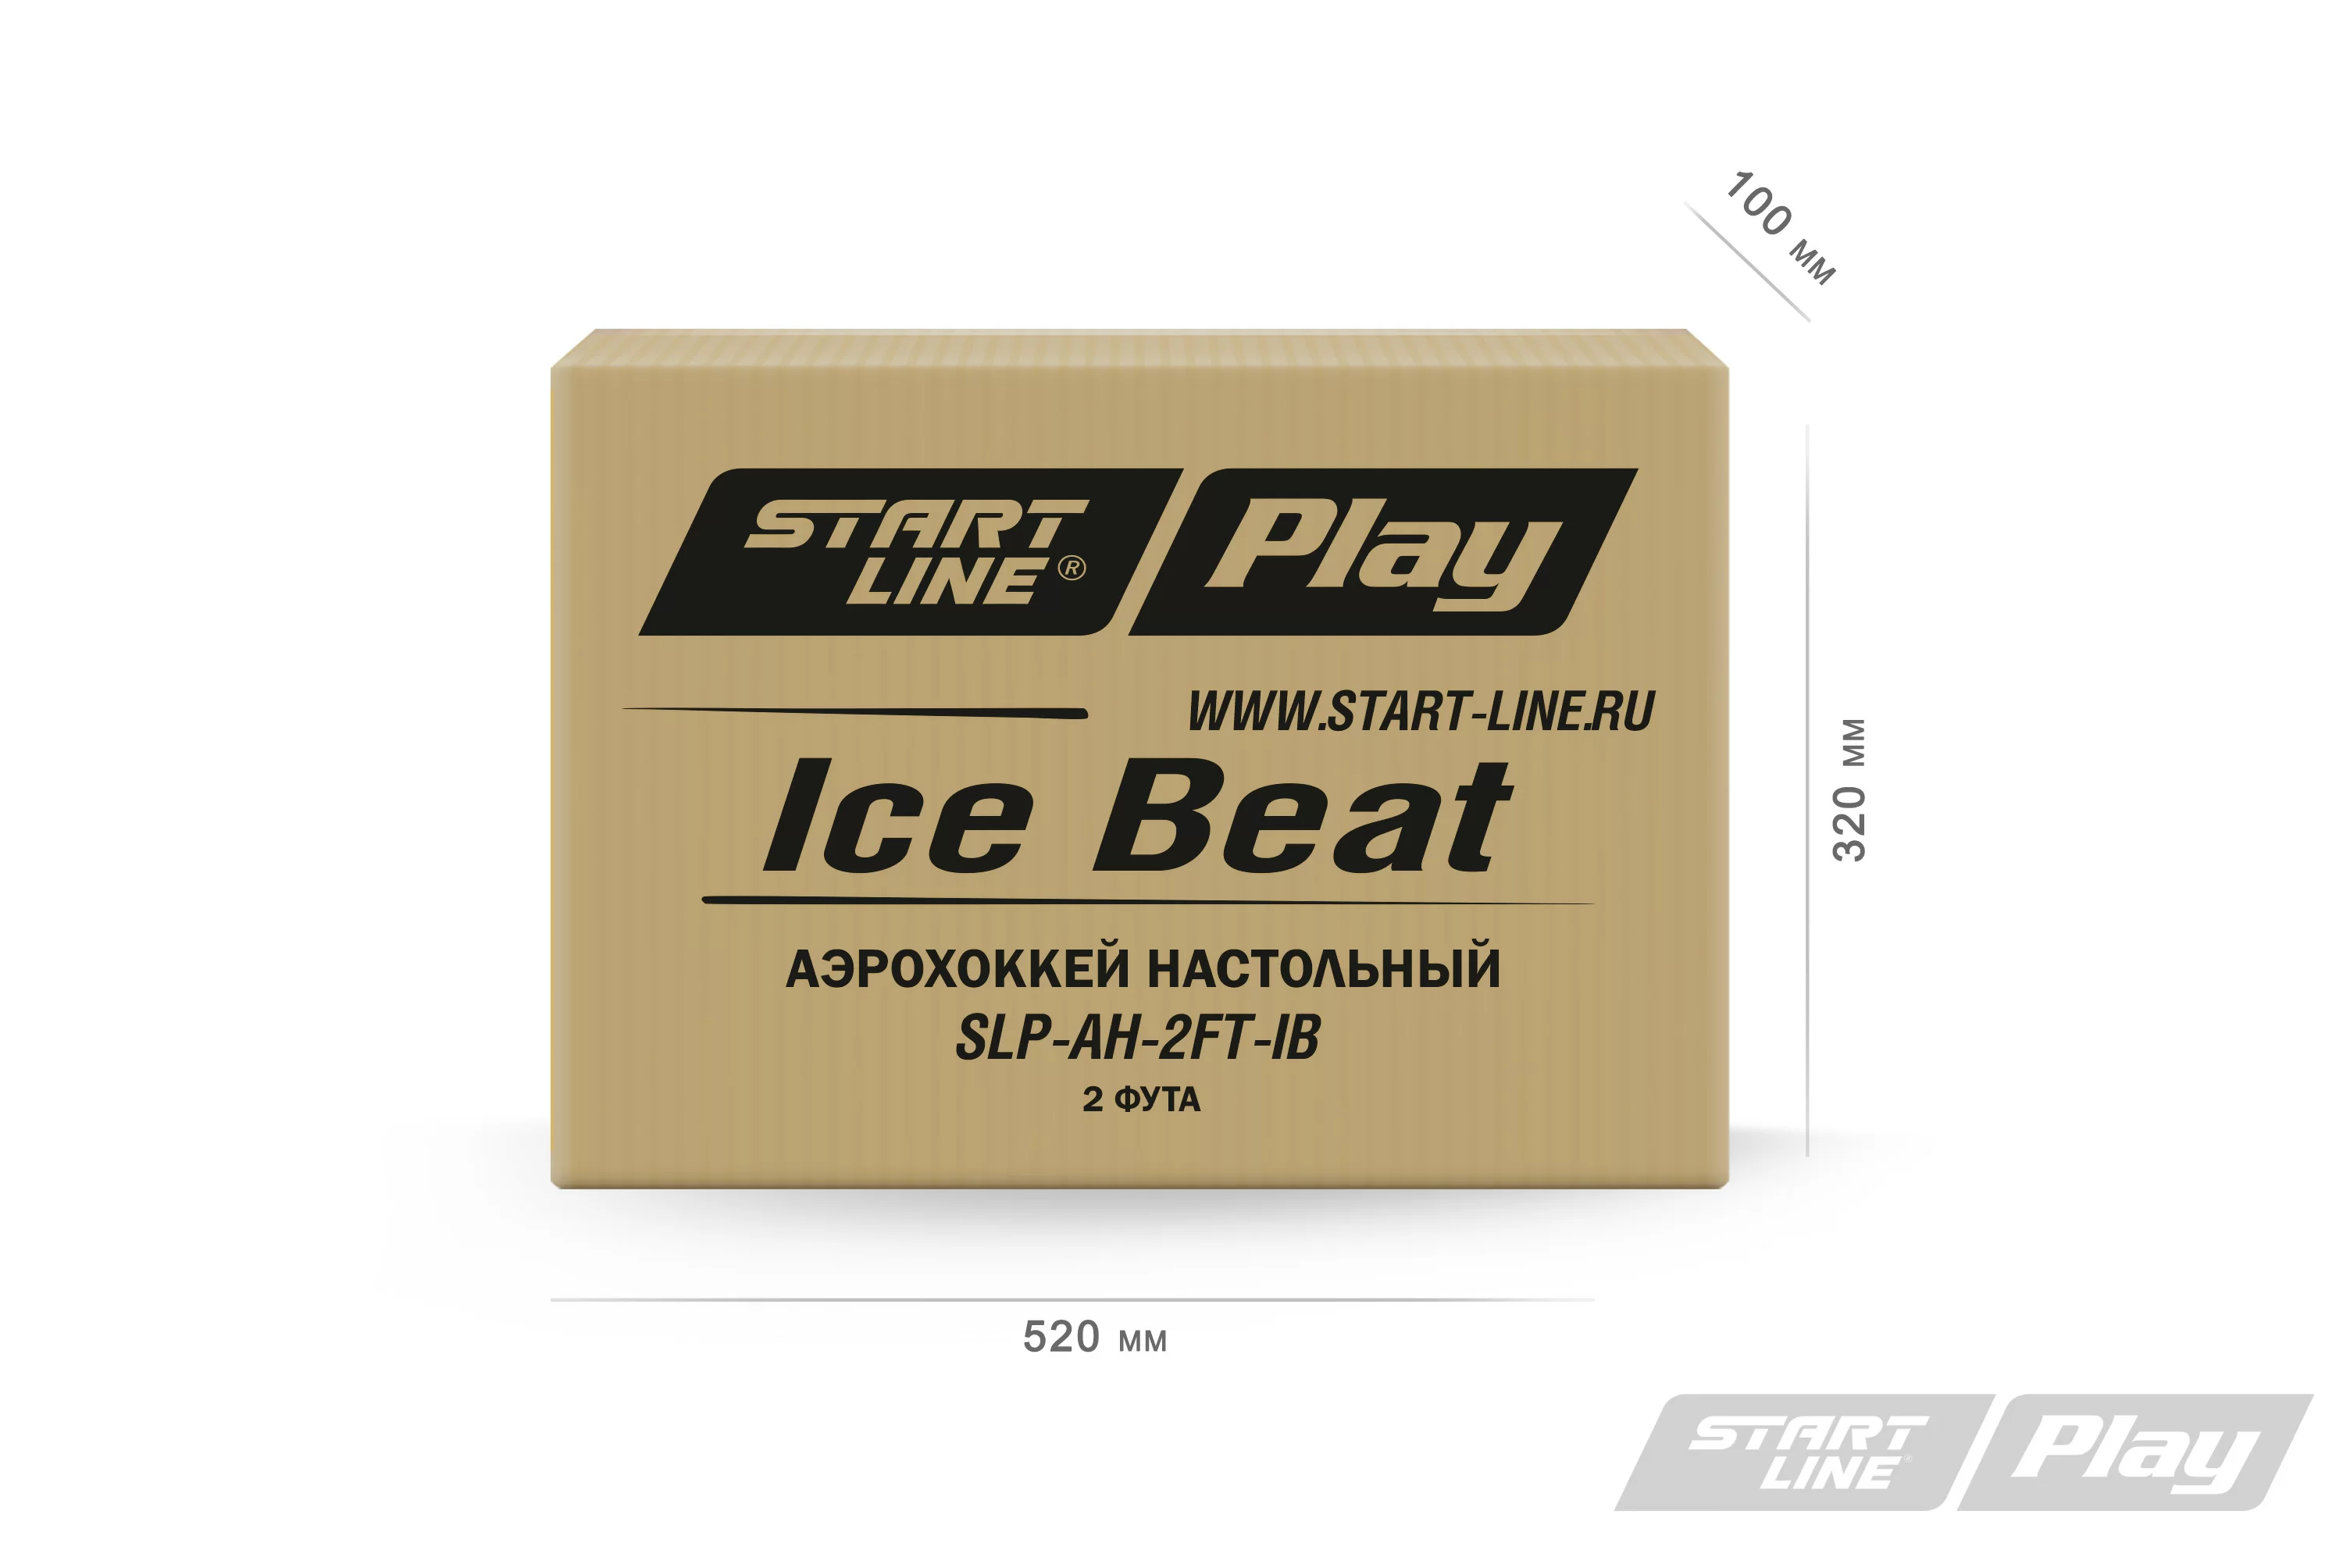 Фото Настольный аэрохоккей ICE BEAT со склада магазина СпортЕВ